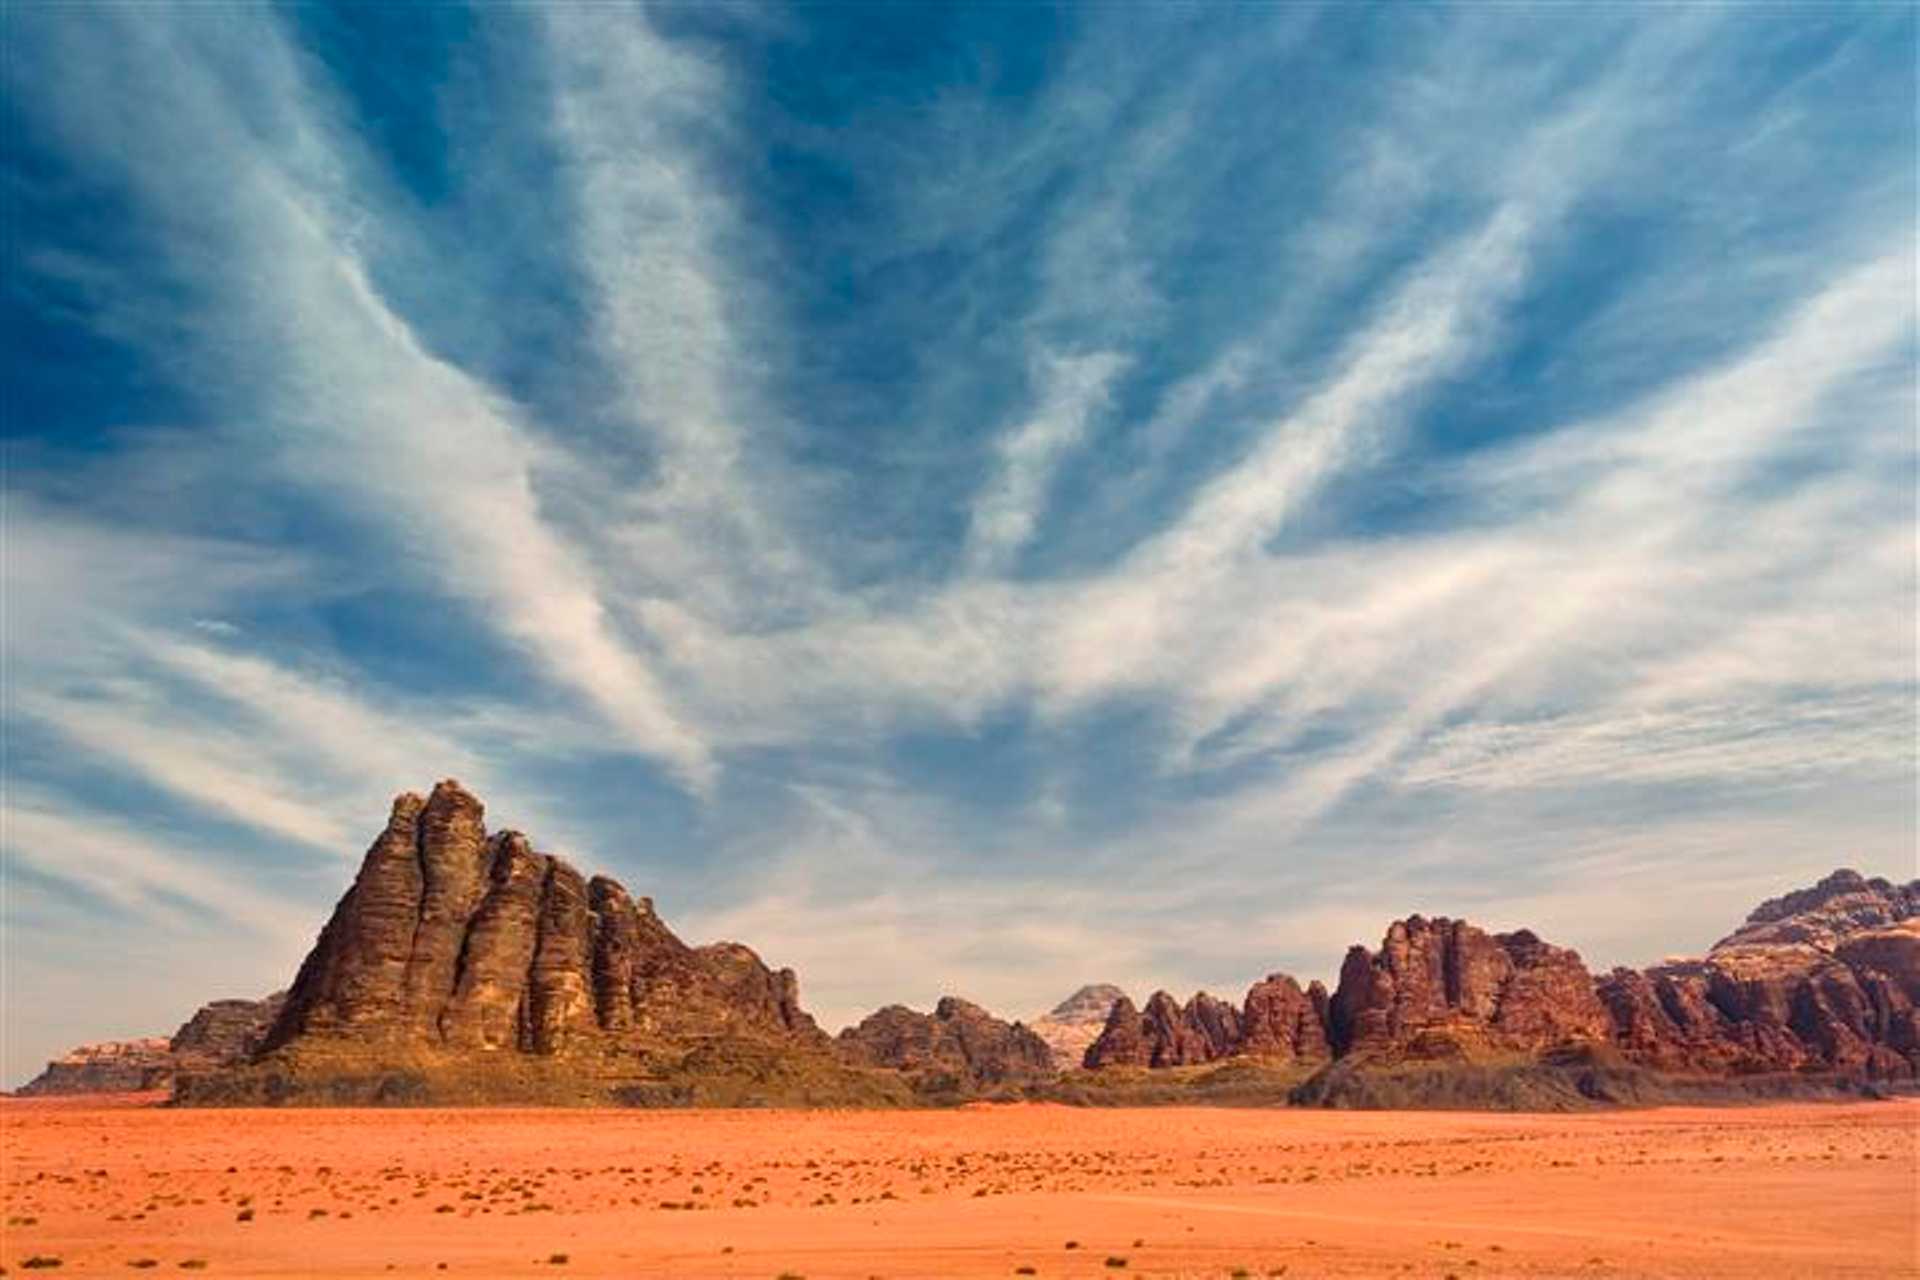 Wadi Rum desert 8 days/7 nights